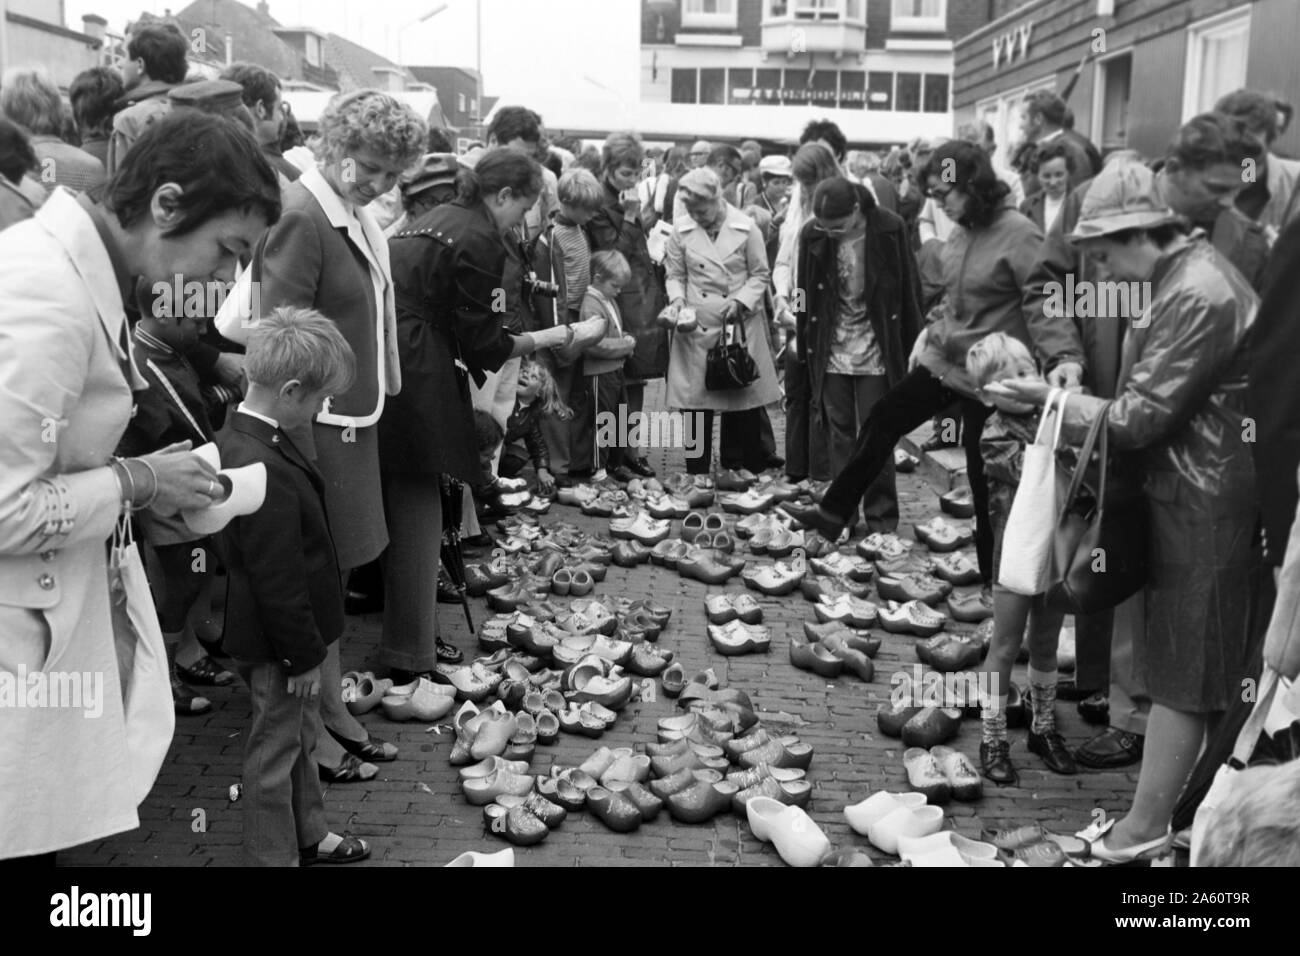 Menschen bei einem verkauf von den traditionellen Klompen, Alkmaar Niederlande 1971. People at a selling of the traditional Klompen, Alkmaar Netherlands 1971. Stock Photo